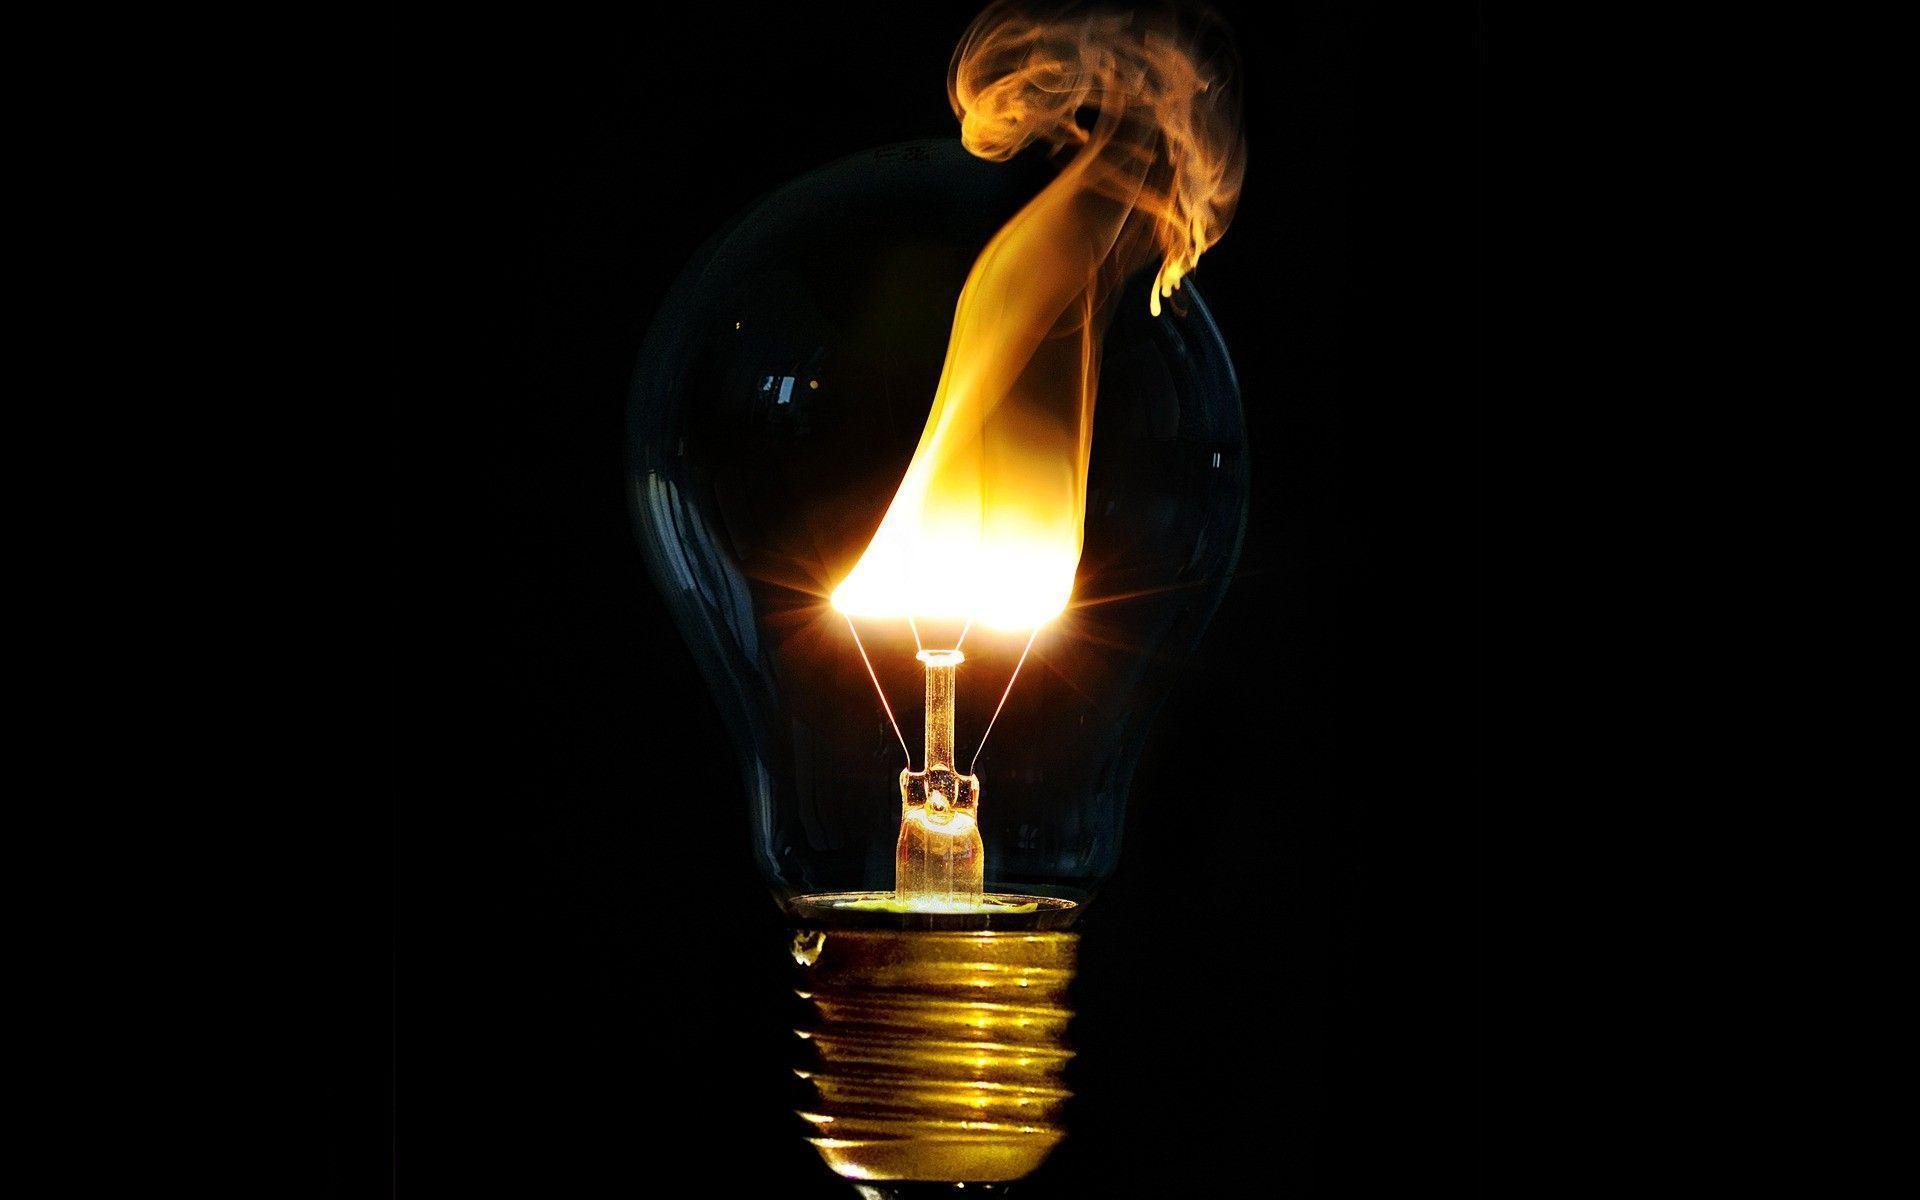 Fire a light bulbs Wallpaper HD / Desktop and Mobile Background